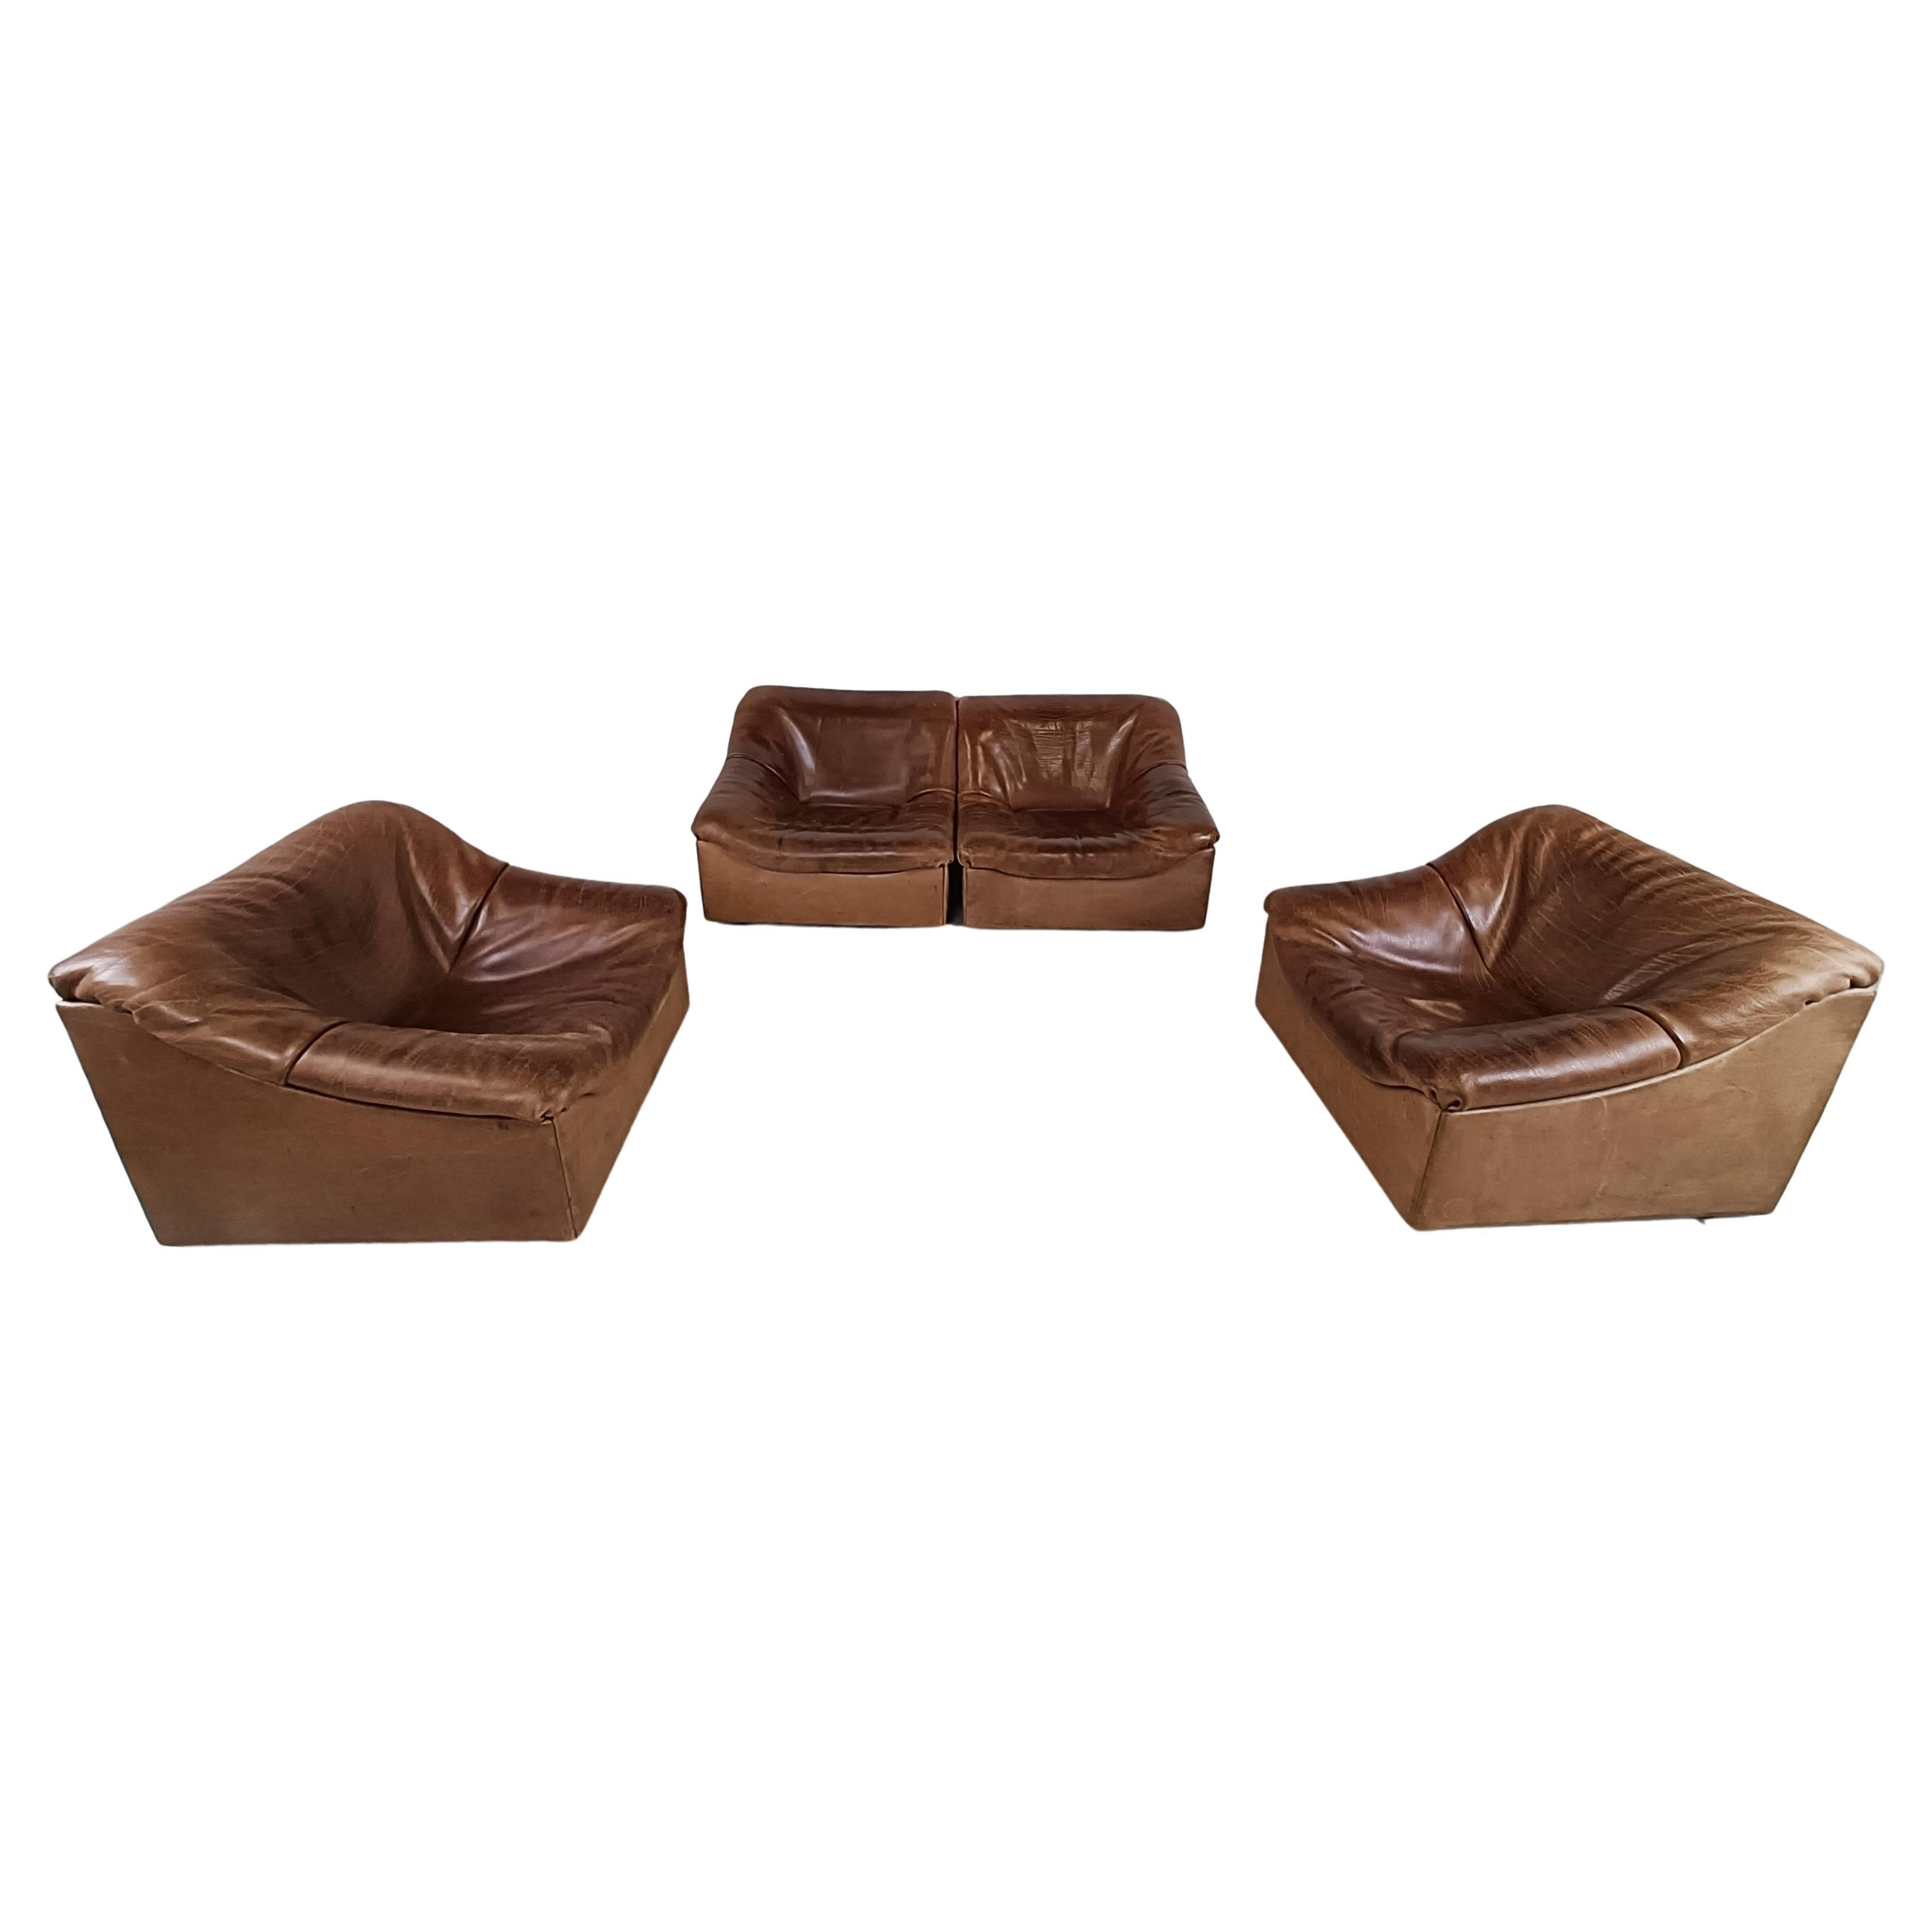 Vintage Leather Ds46 Modular Sofa by De Sede, 1970s